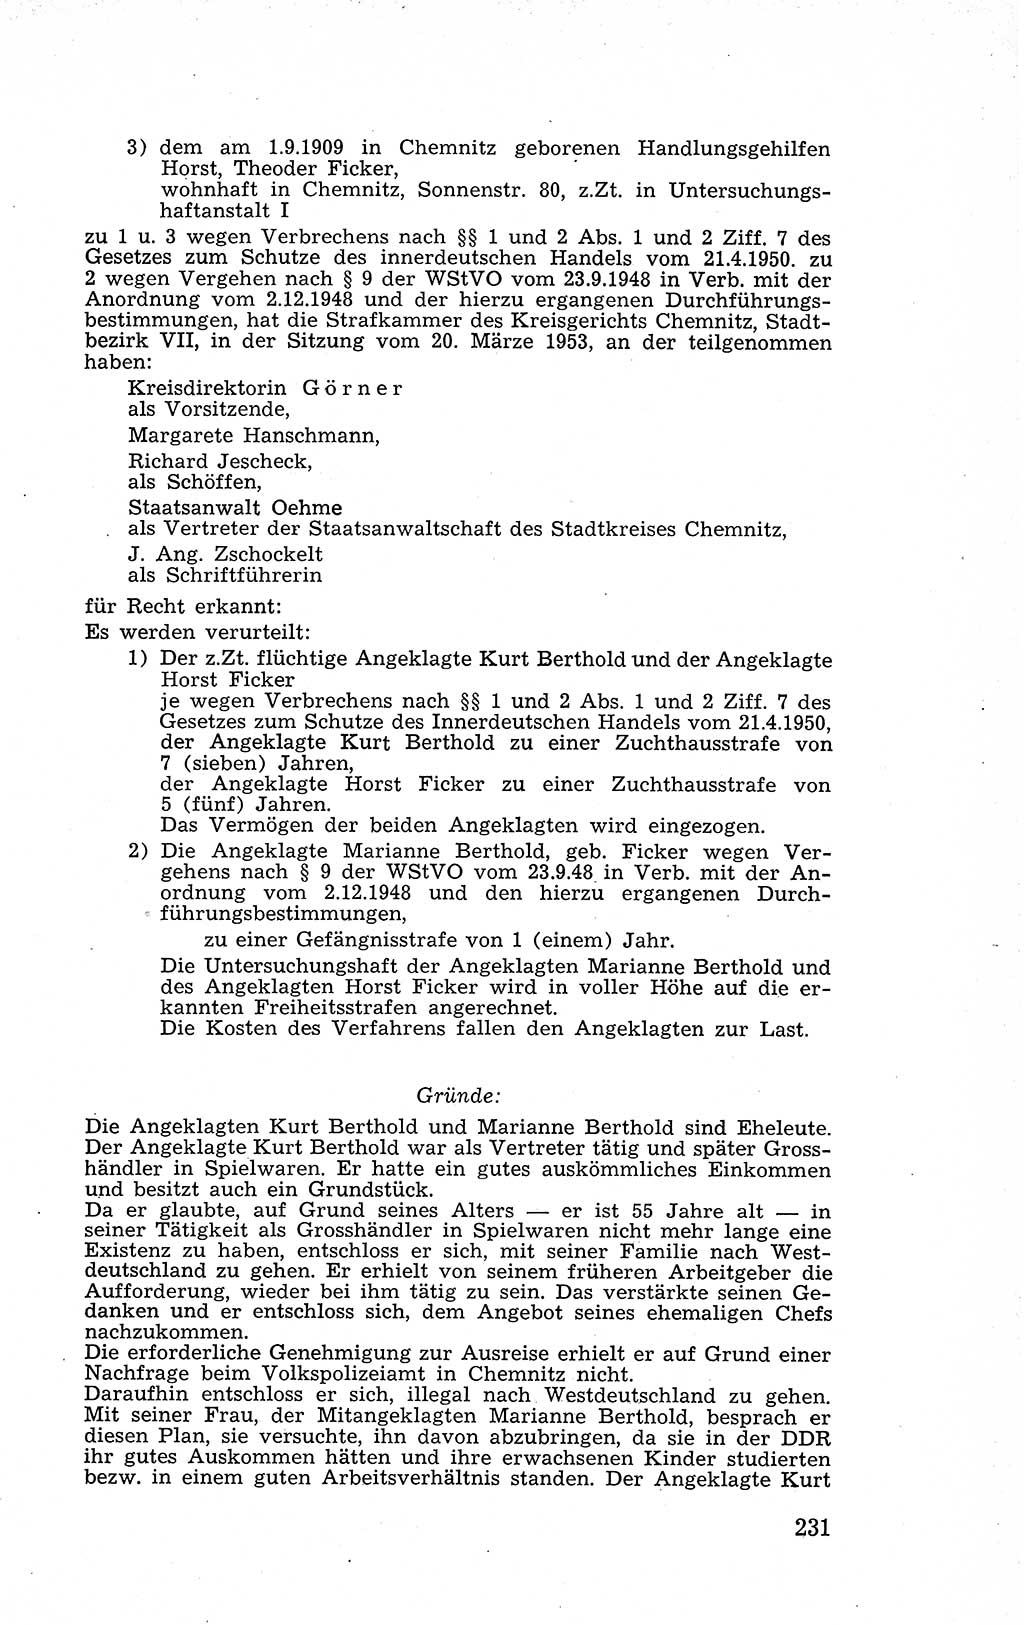 Recht in Fesseln, Dokumente, Internationale Juristen-Kommission [Bundesrepublik Deutschland (BRD)] 1955, Seite 231 (R. Dok. IJK BRD 1955, S. 231)